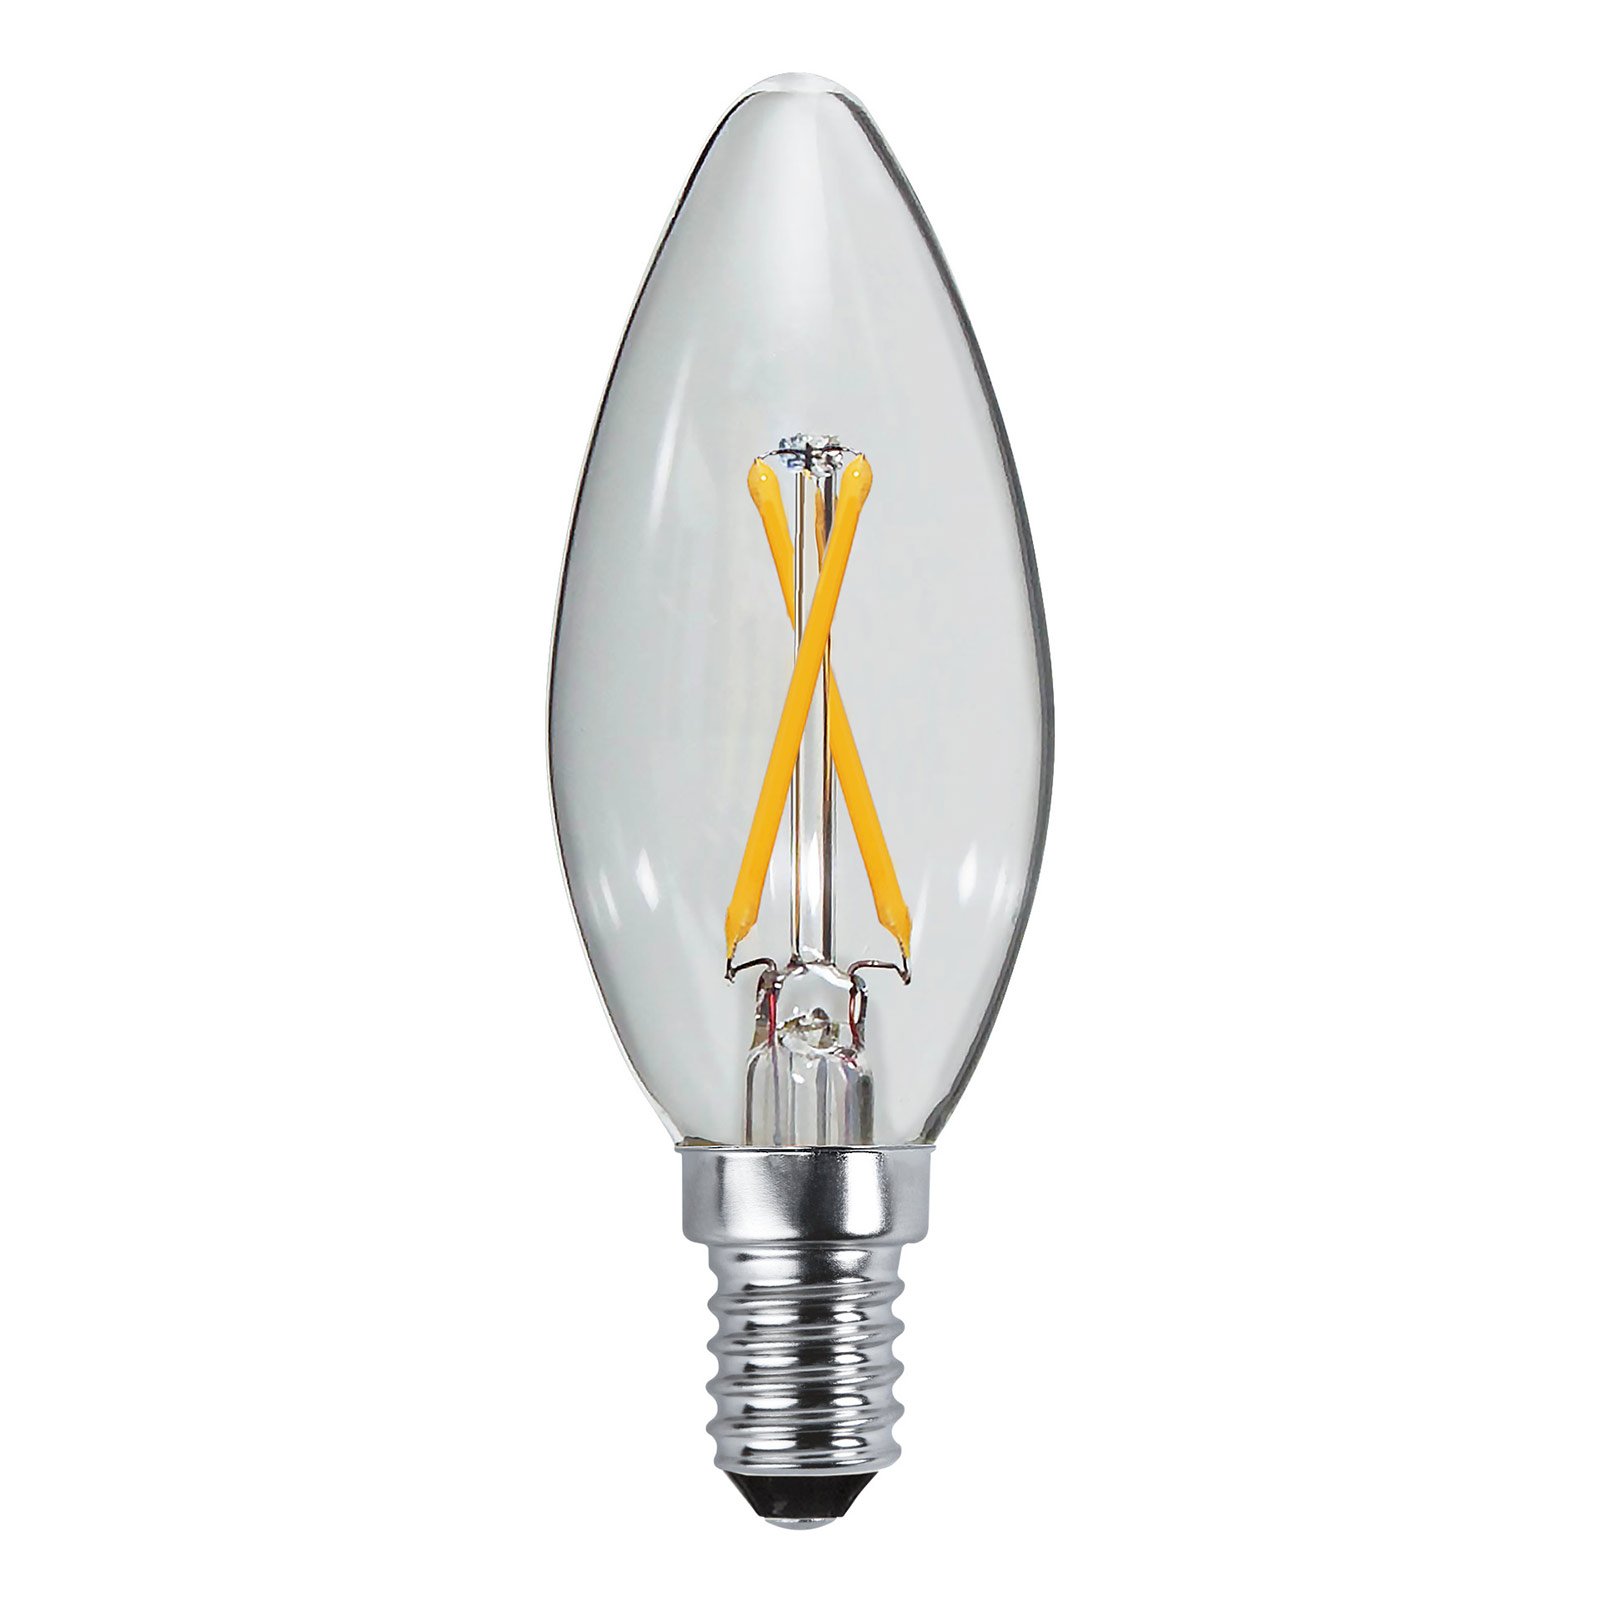 Candle LED bulb E14 B35 2W 2,700K filament 250lm